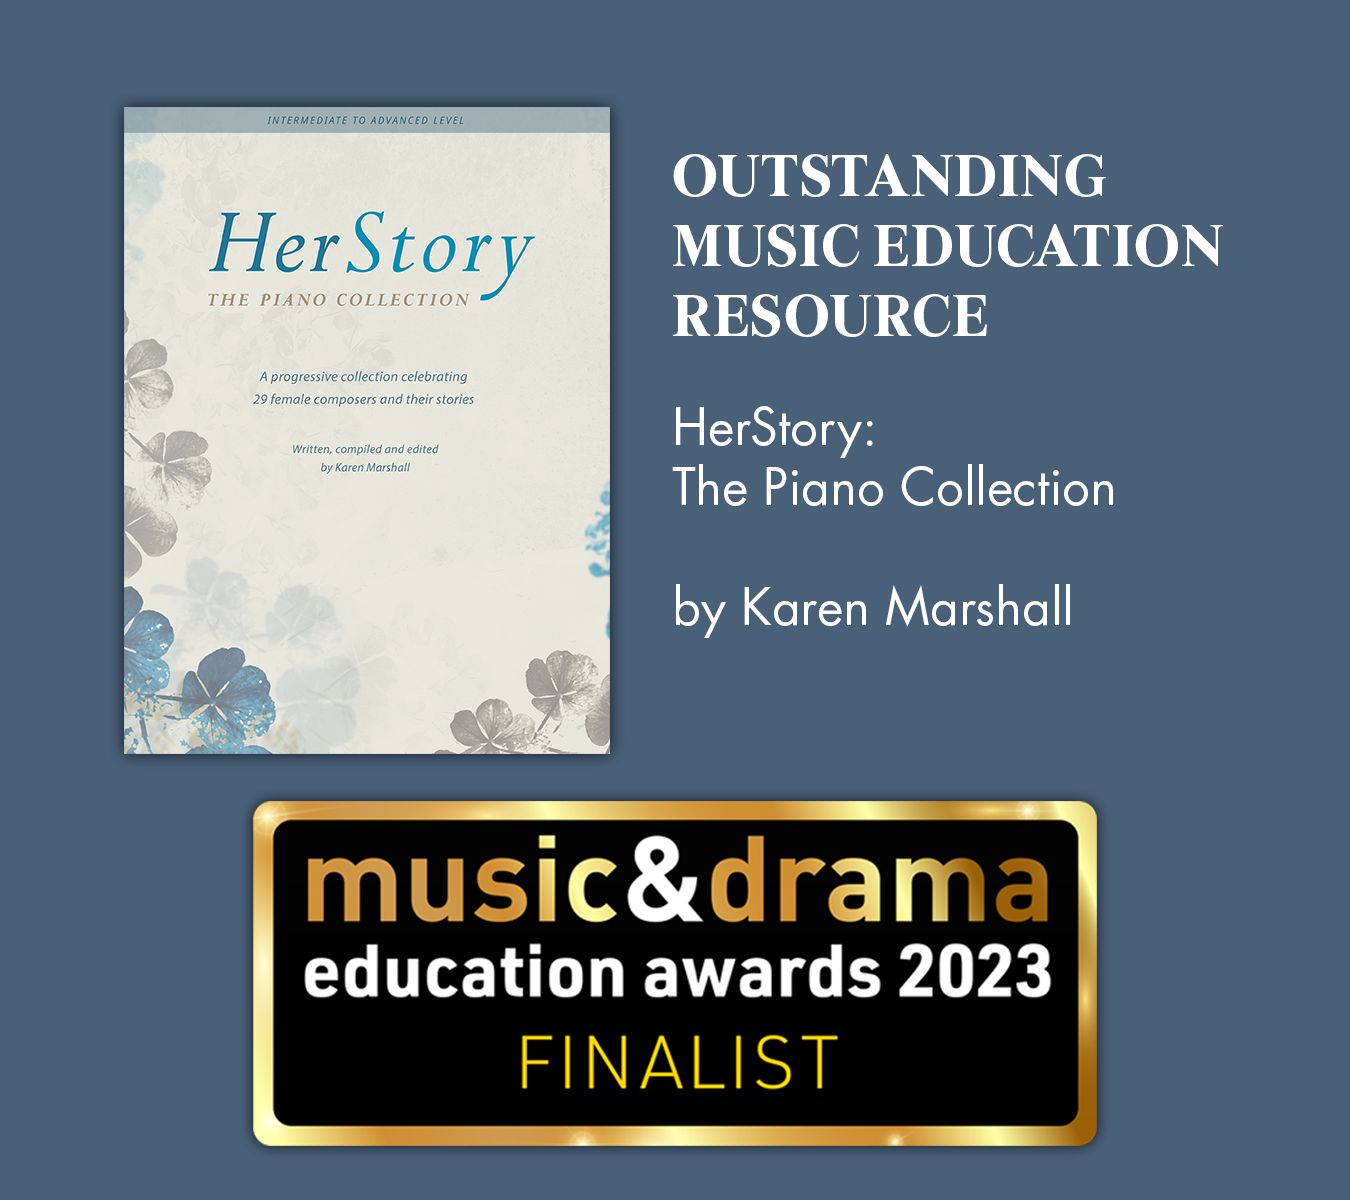 獲得2023 Music & Drama Education Awards 入圍的HerStory